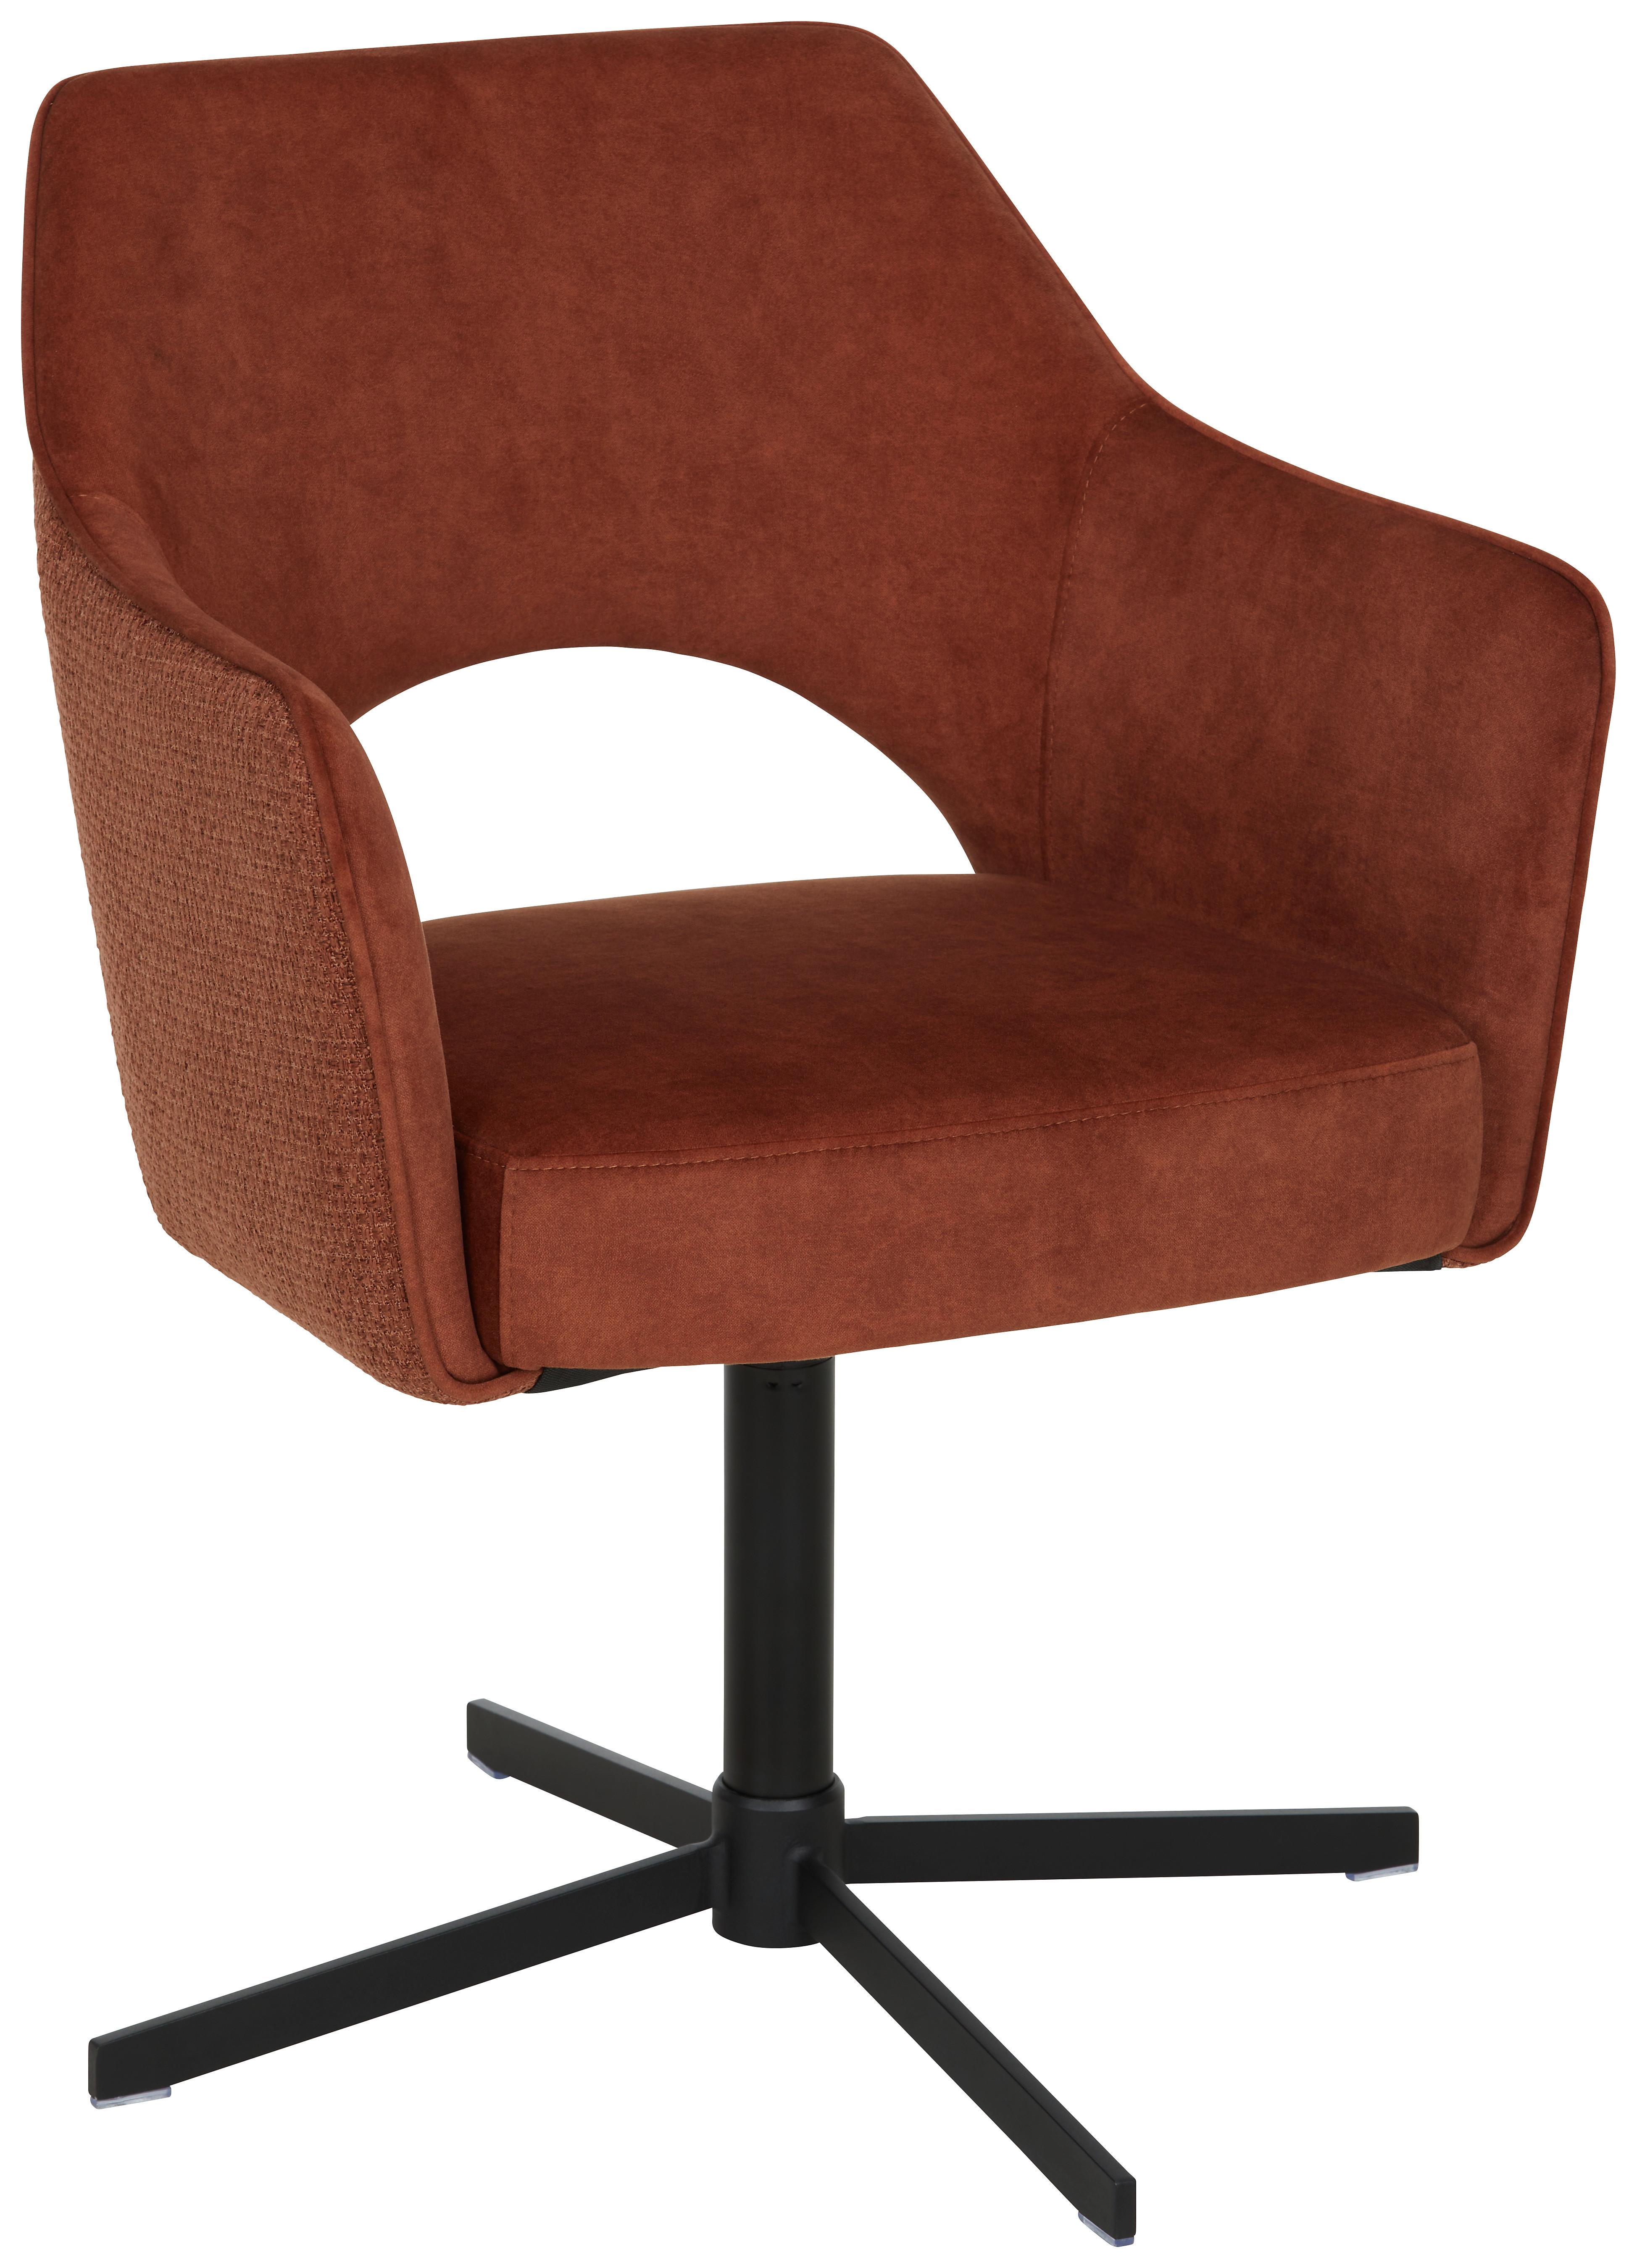 Židle S Područkami Valletta - černá/rezavá, Konvenční, kov/textil (61/85cm) - Premium Living